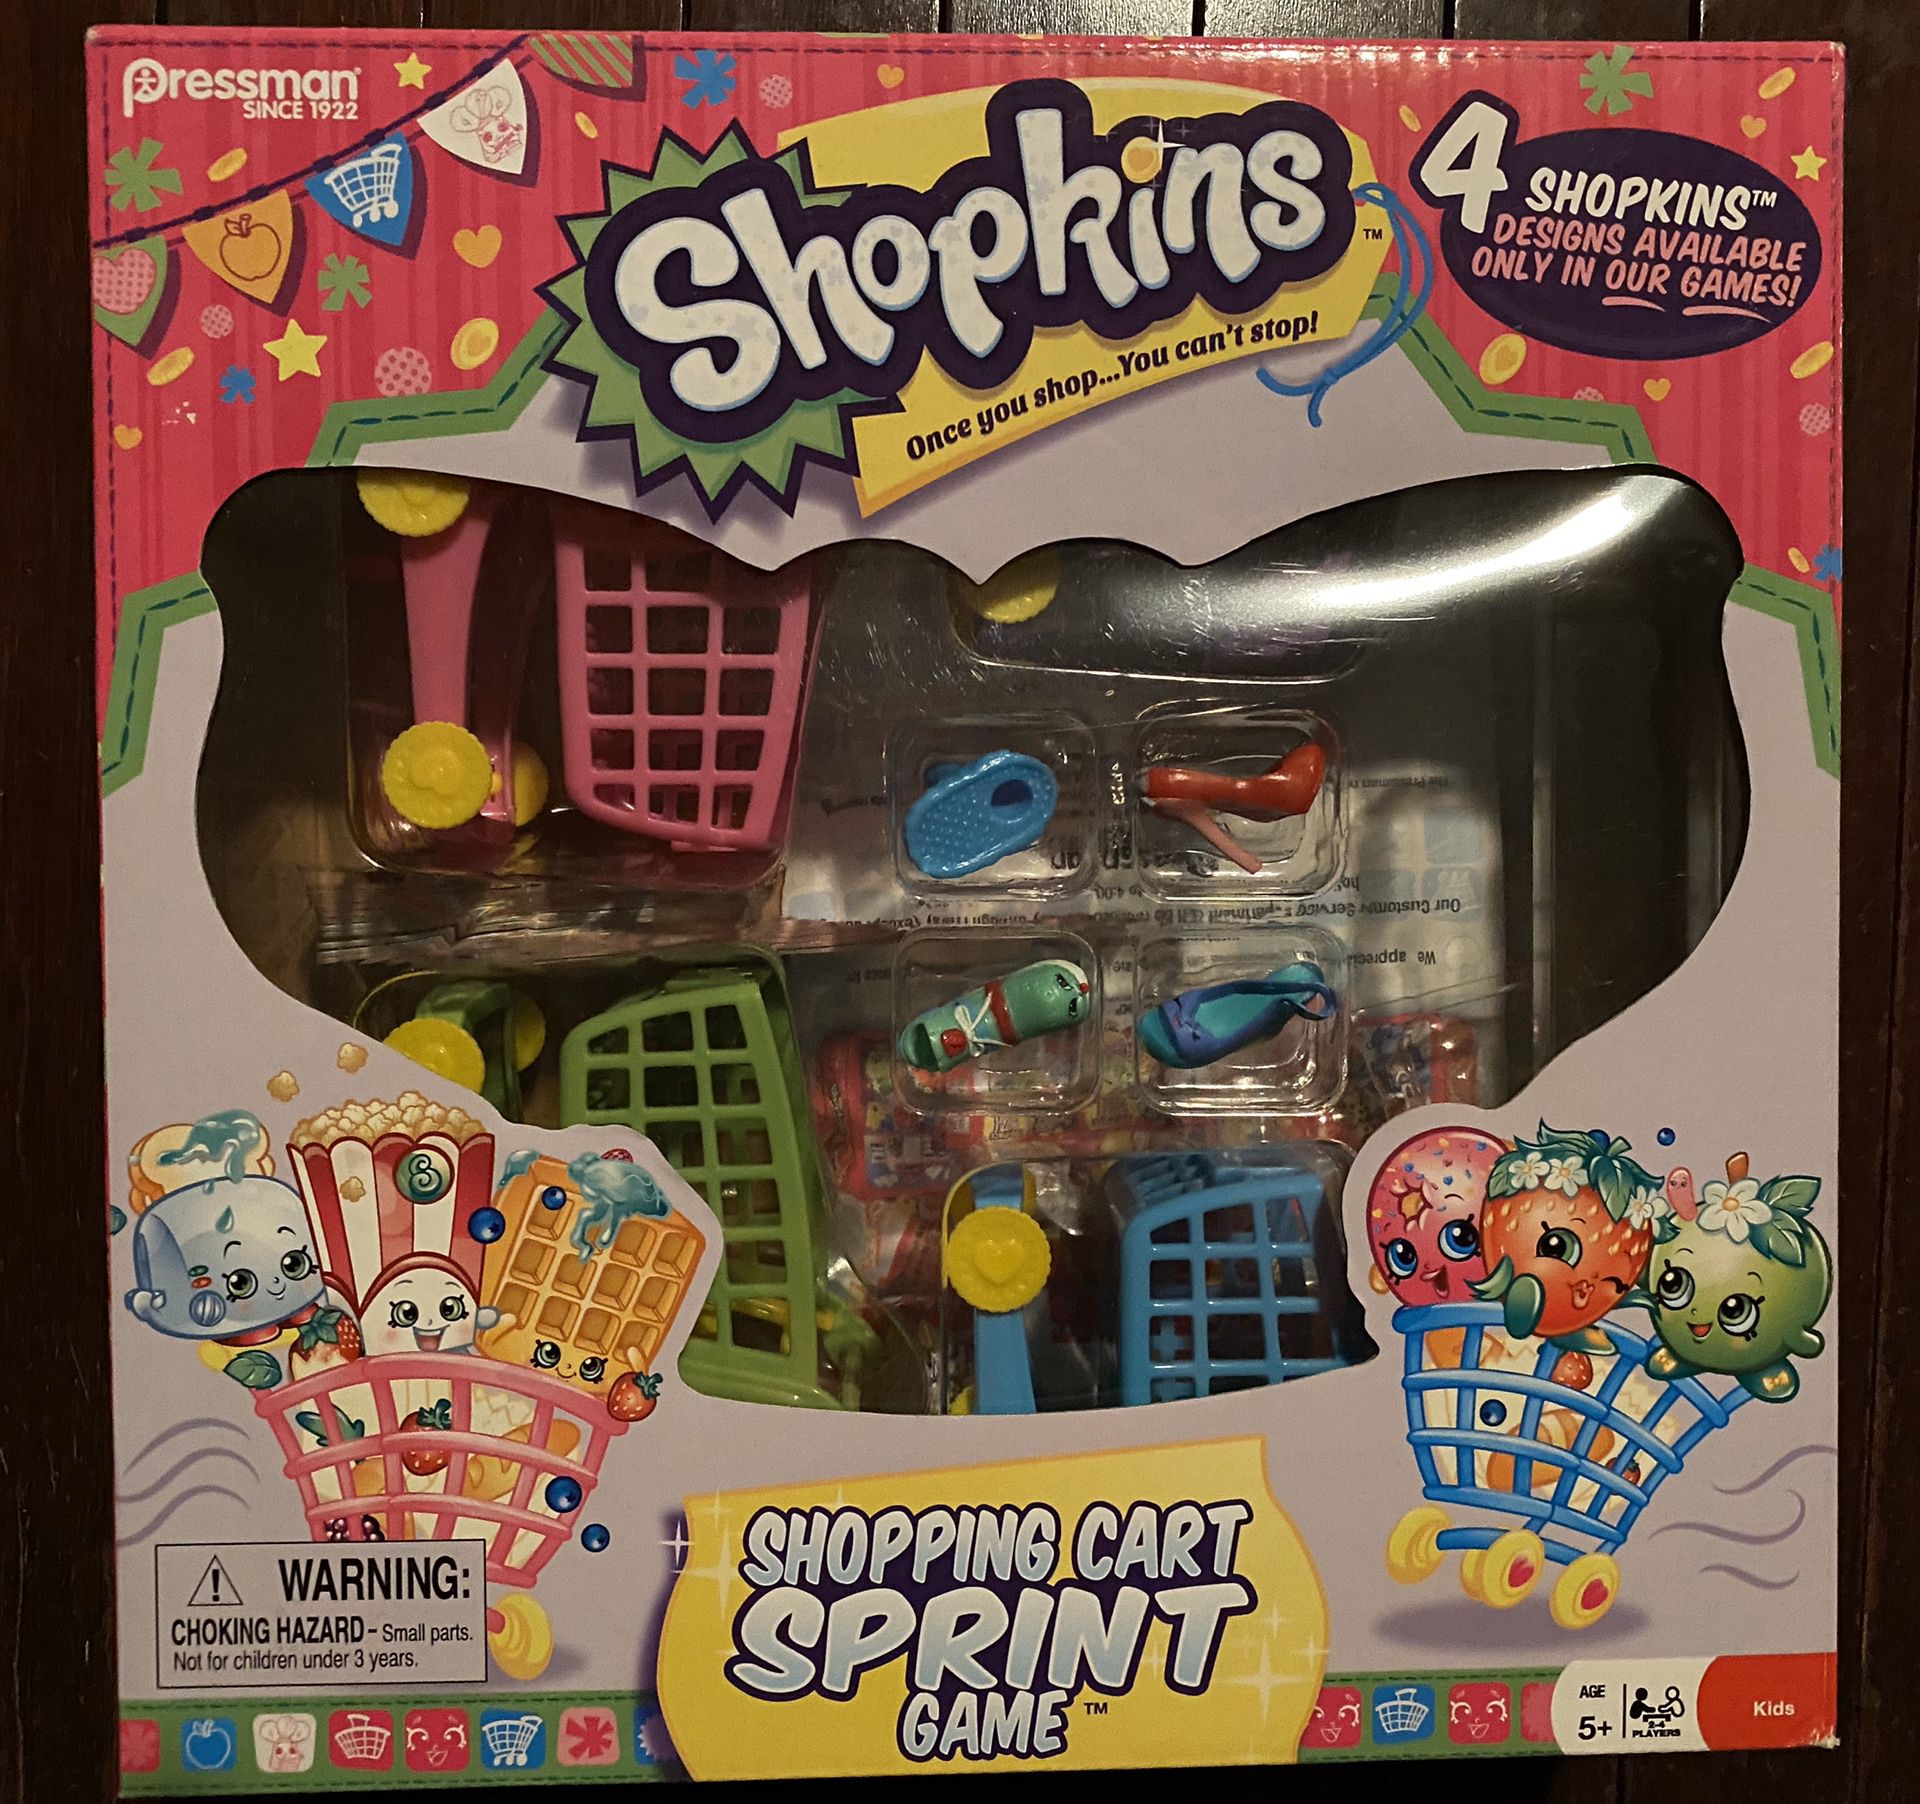 Shopkins shopping cart sprint game